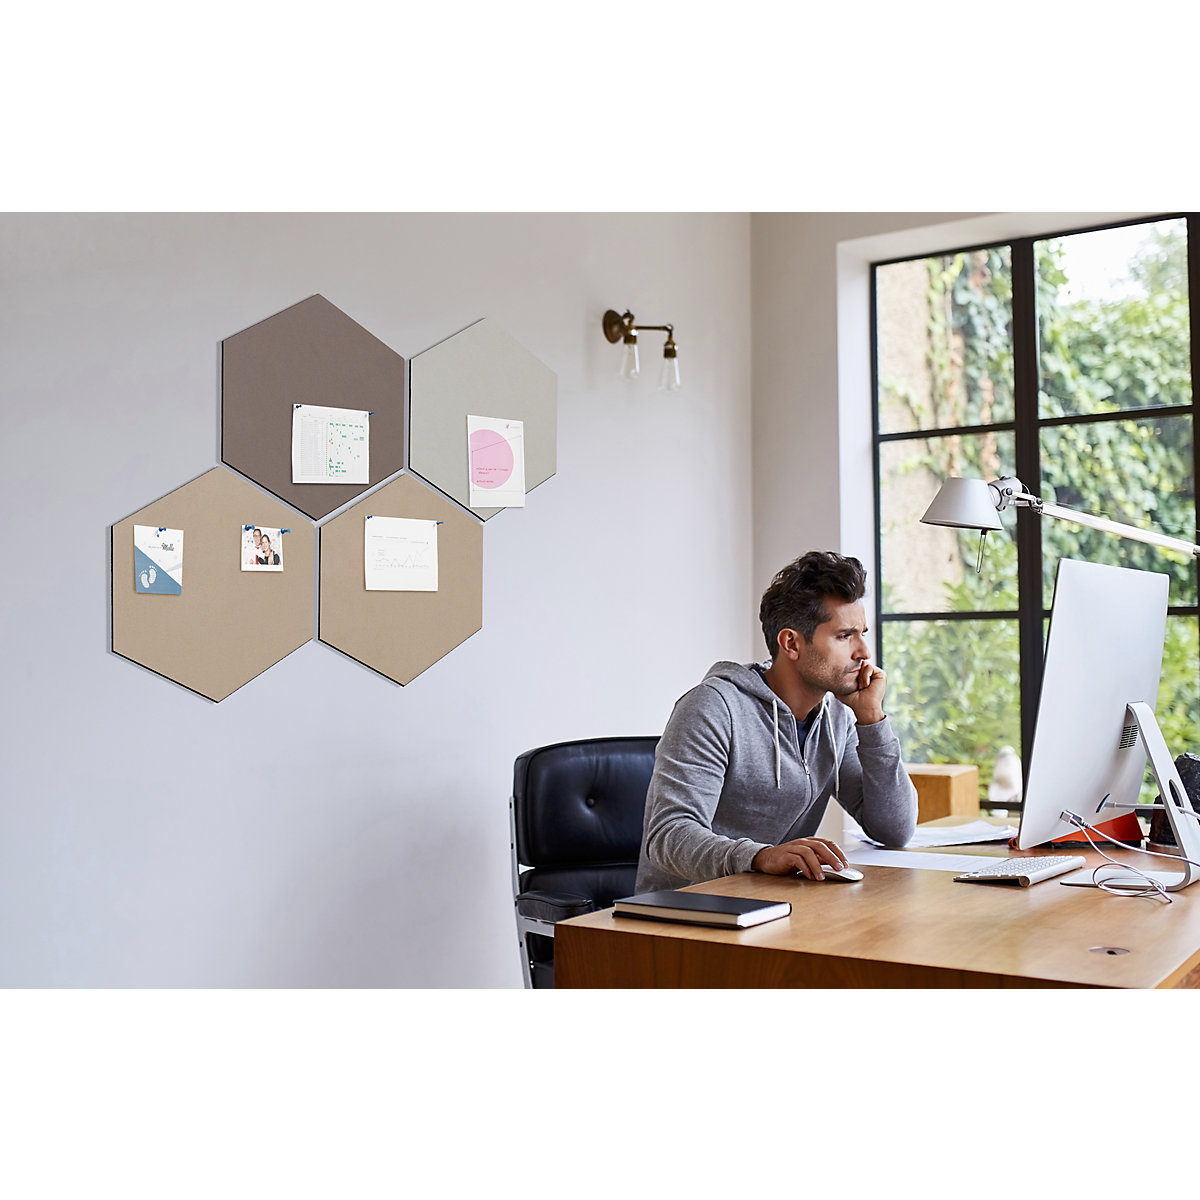 Hexagonal designer pin board – Chameleon (Product illustration 61)-60